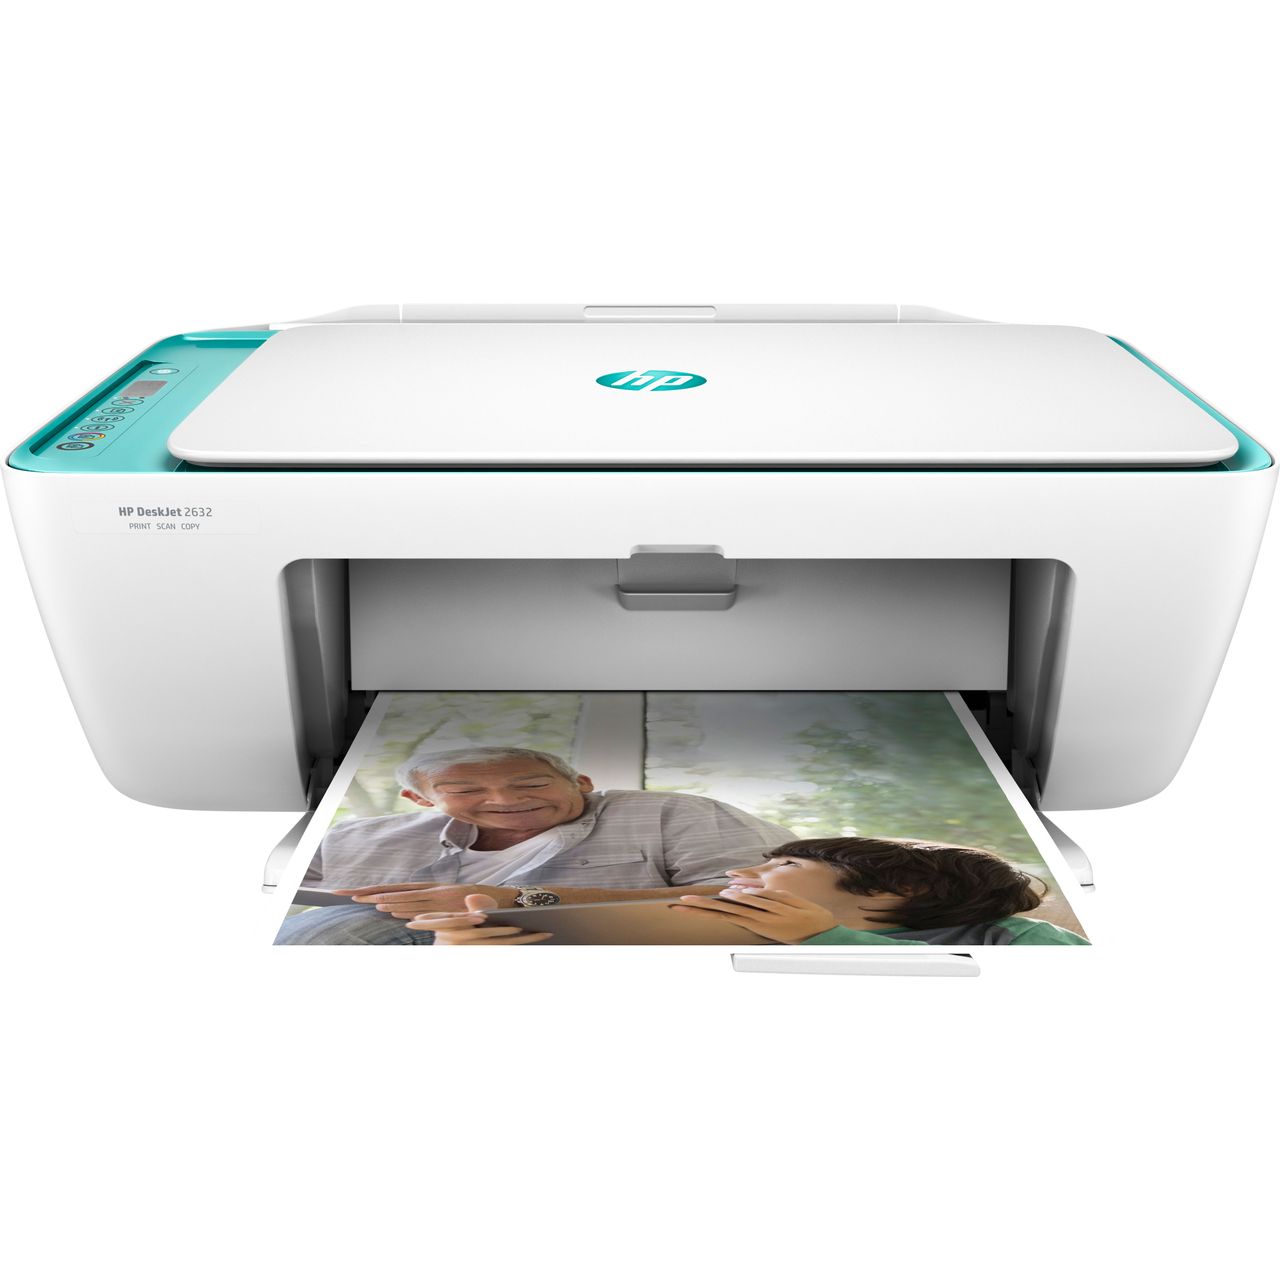 HP DeskJet 2632 Inkjet Printer Review